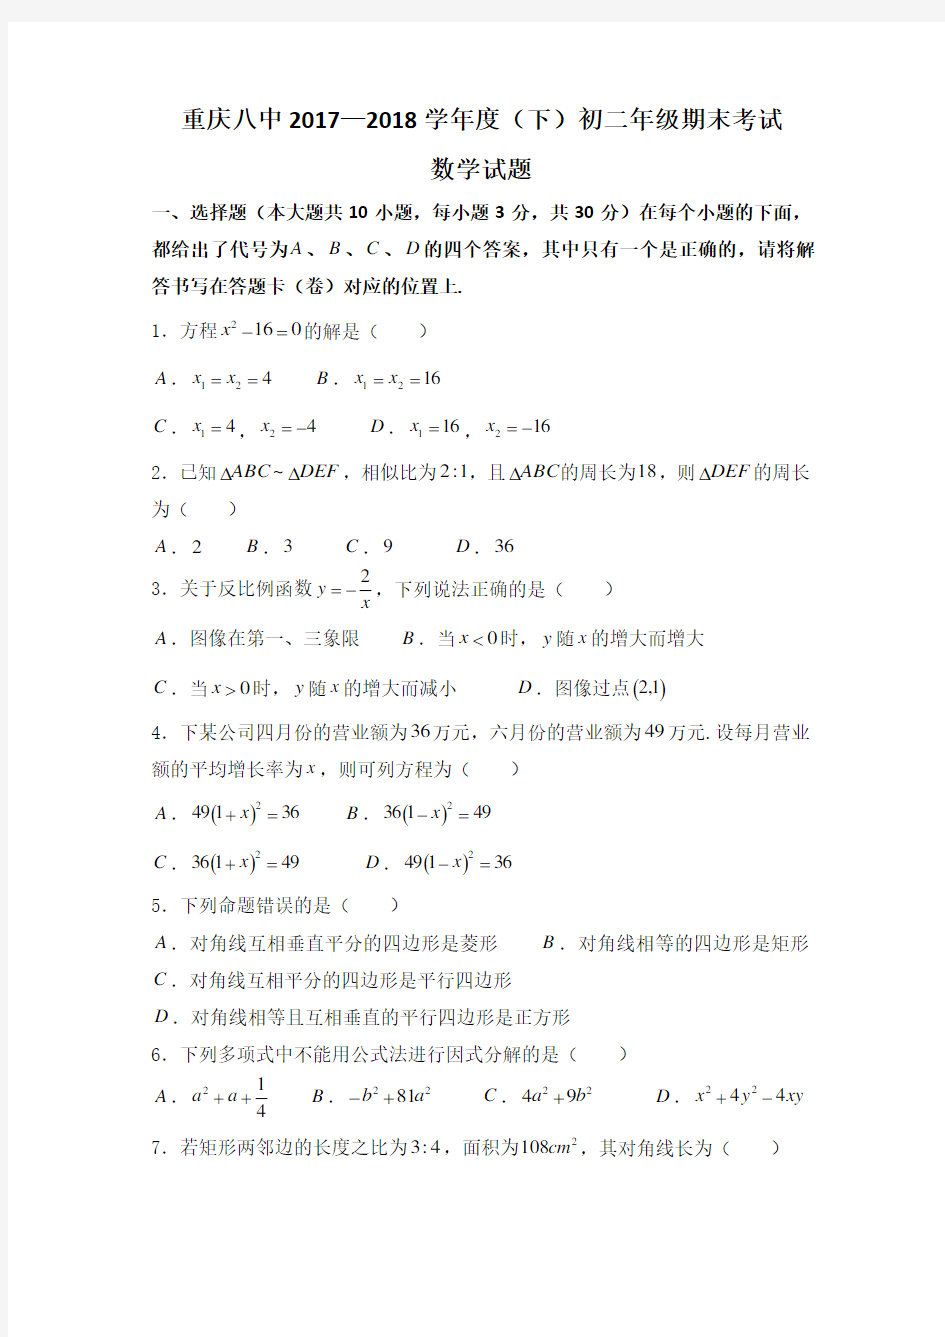 (完整版)重庆八中2017—2018学年度(下)初二年级期末考试